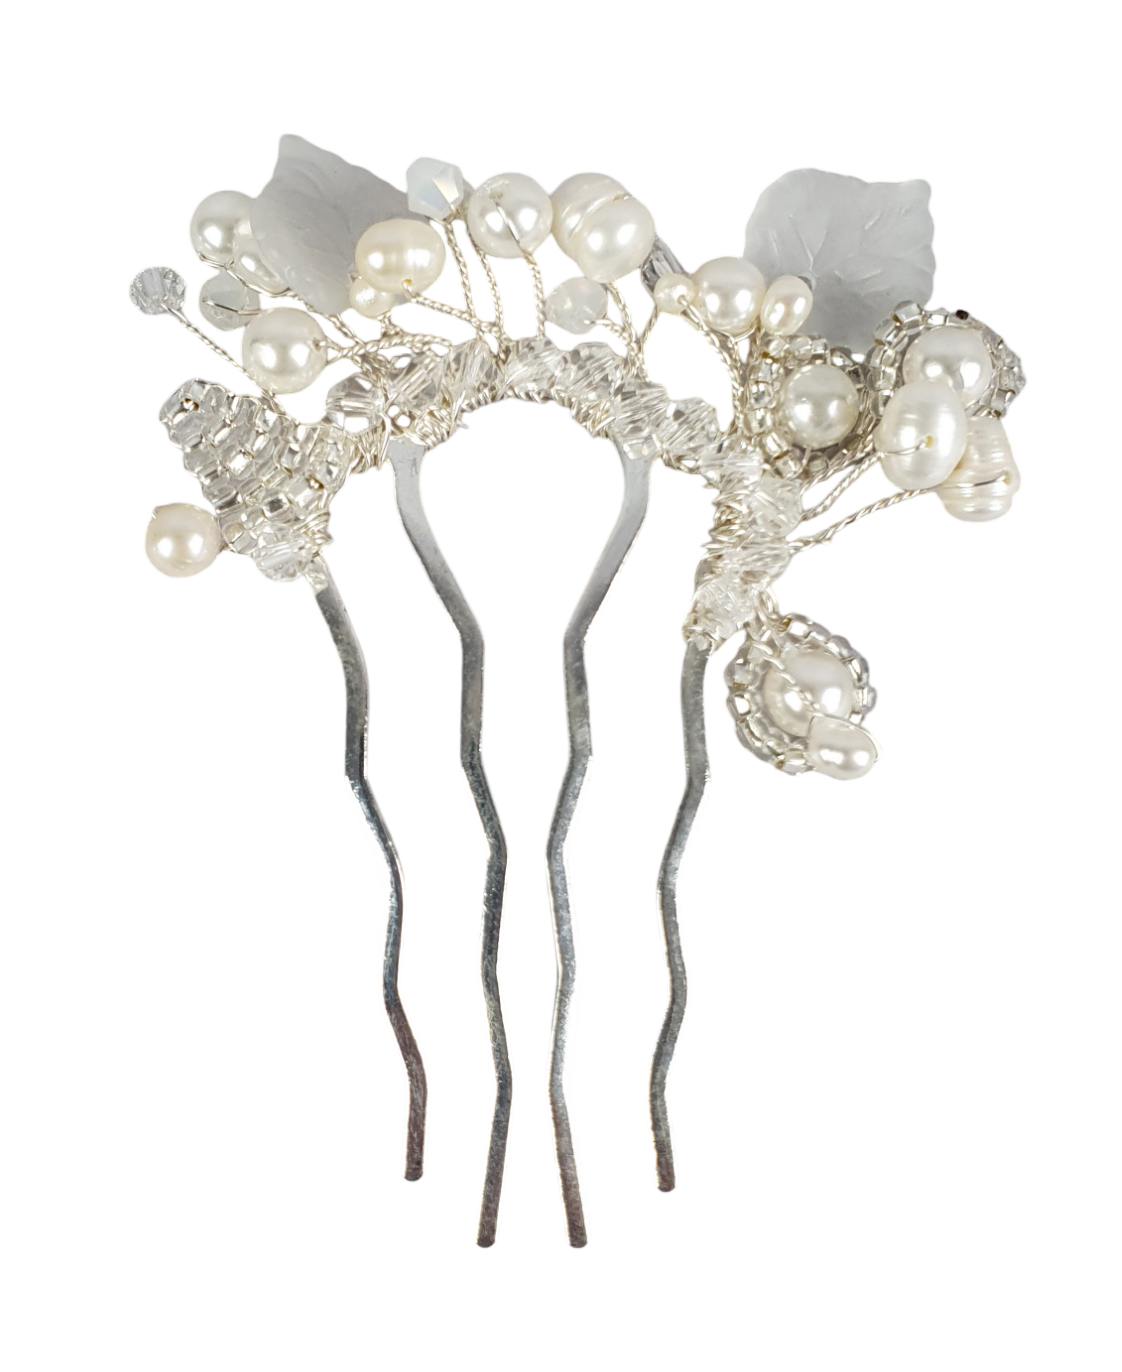 Peineta de novia hecha a mano con perlas blancas de agua dulce, Elegante y única para ocasiones especiales, accesorios para el cabello